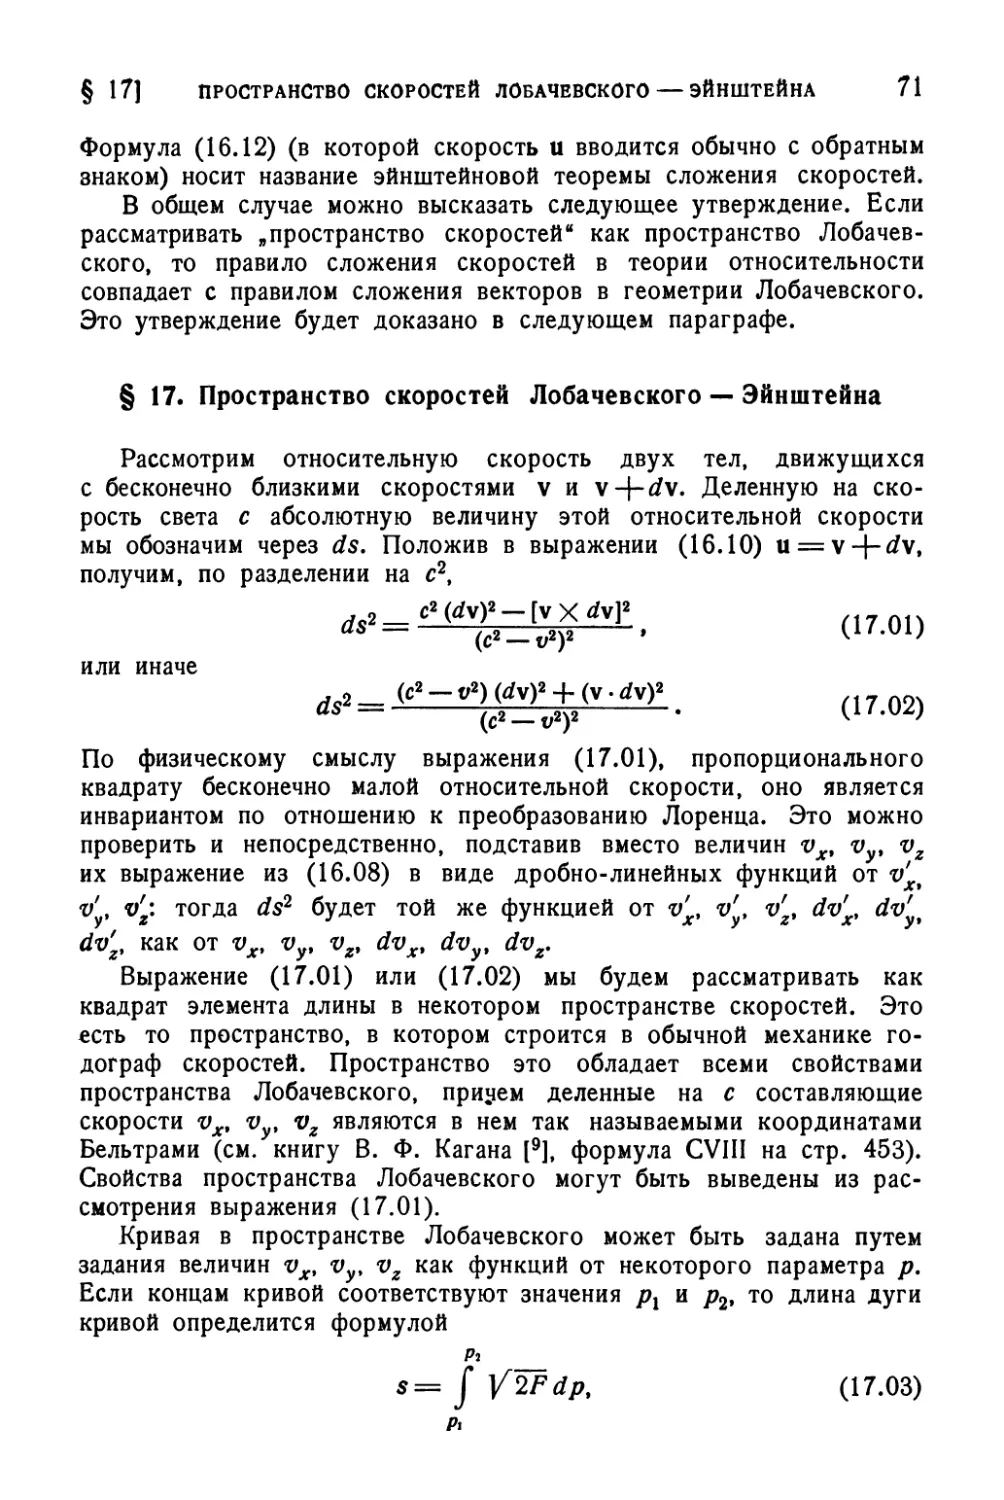 § 17. Пространство скоростей Лобачевского — Эйнштейна